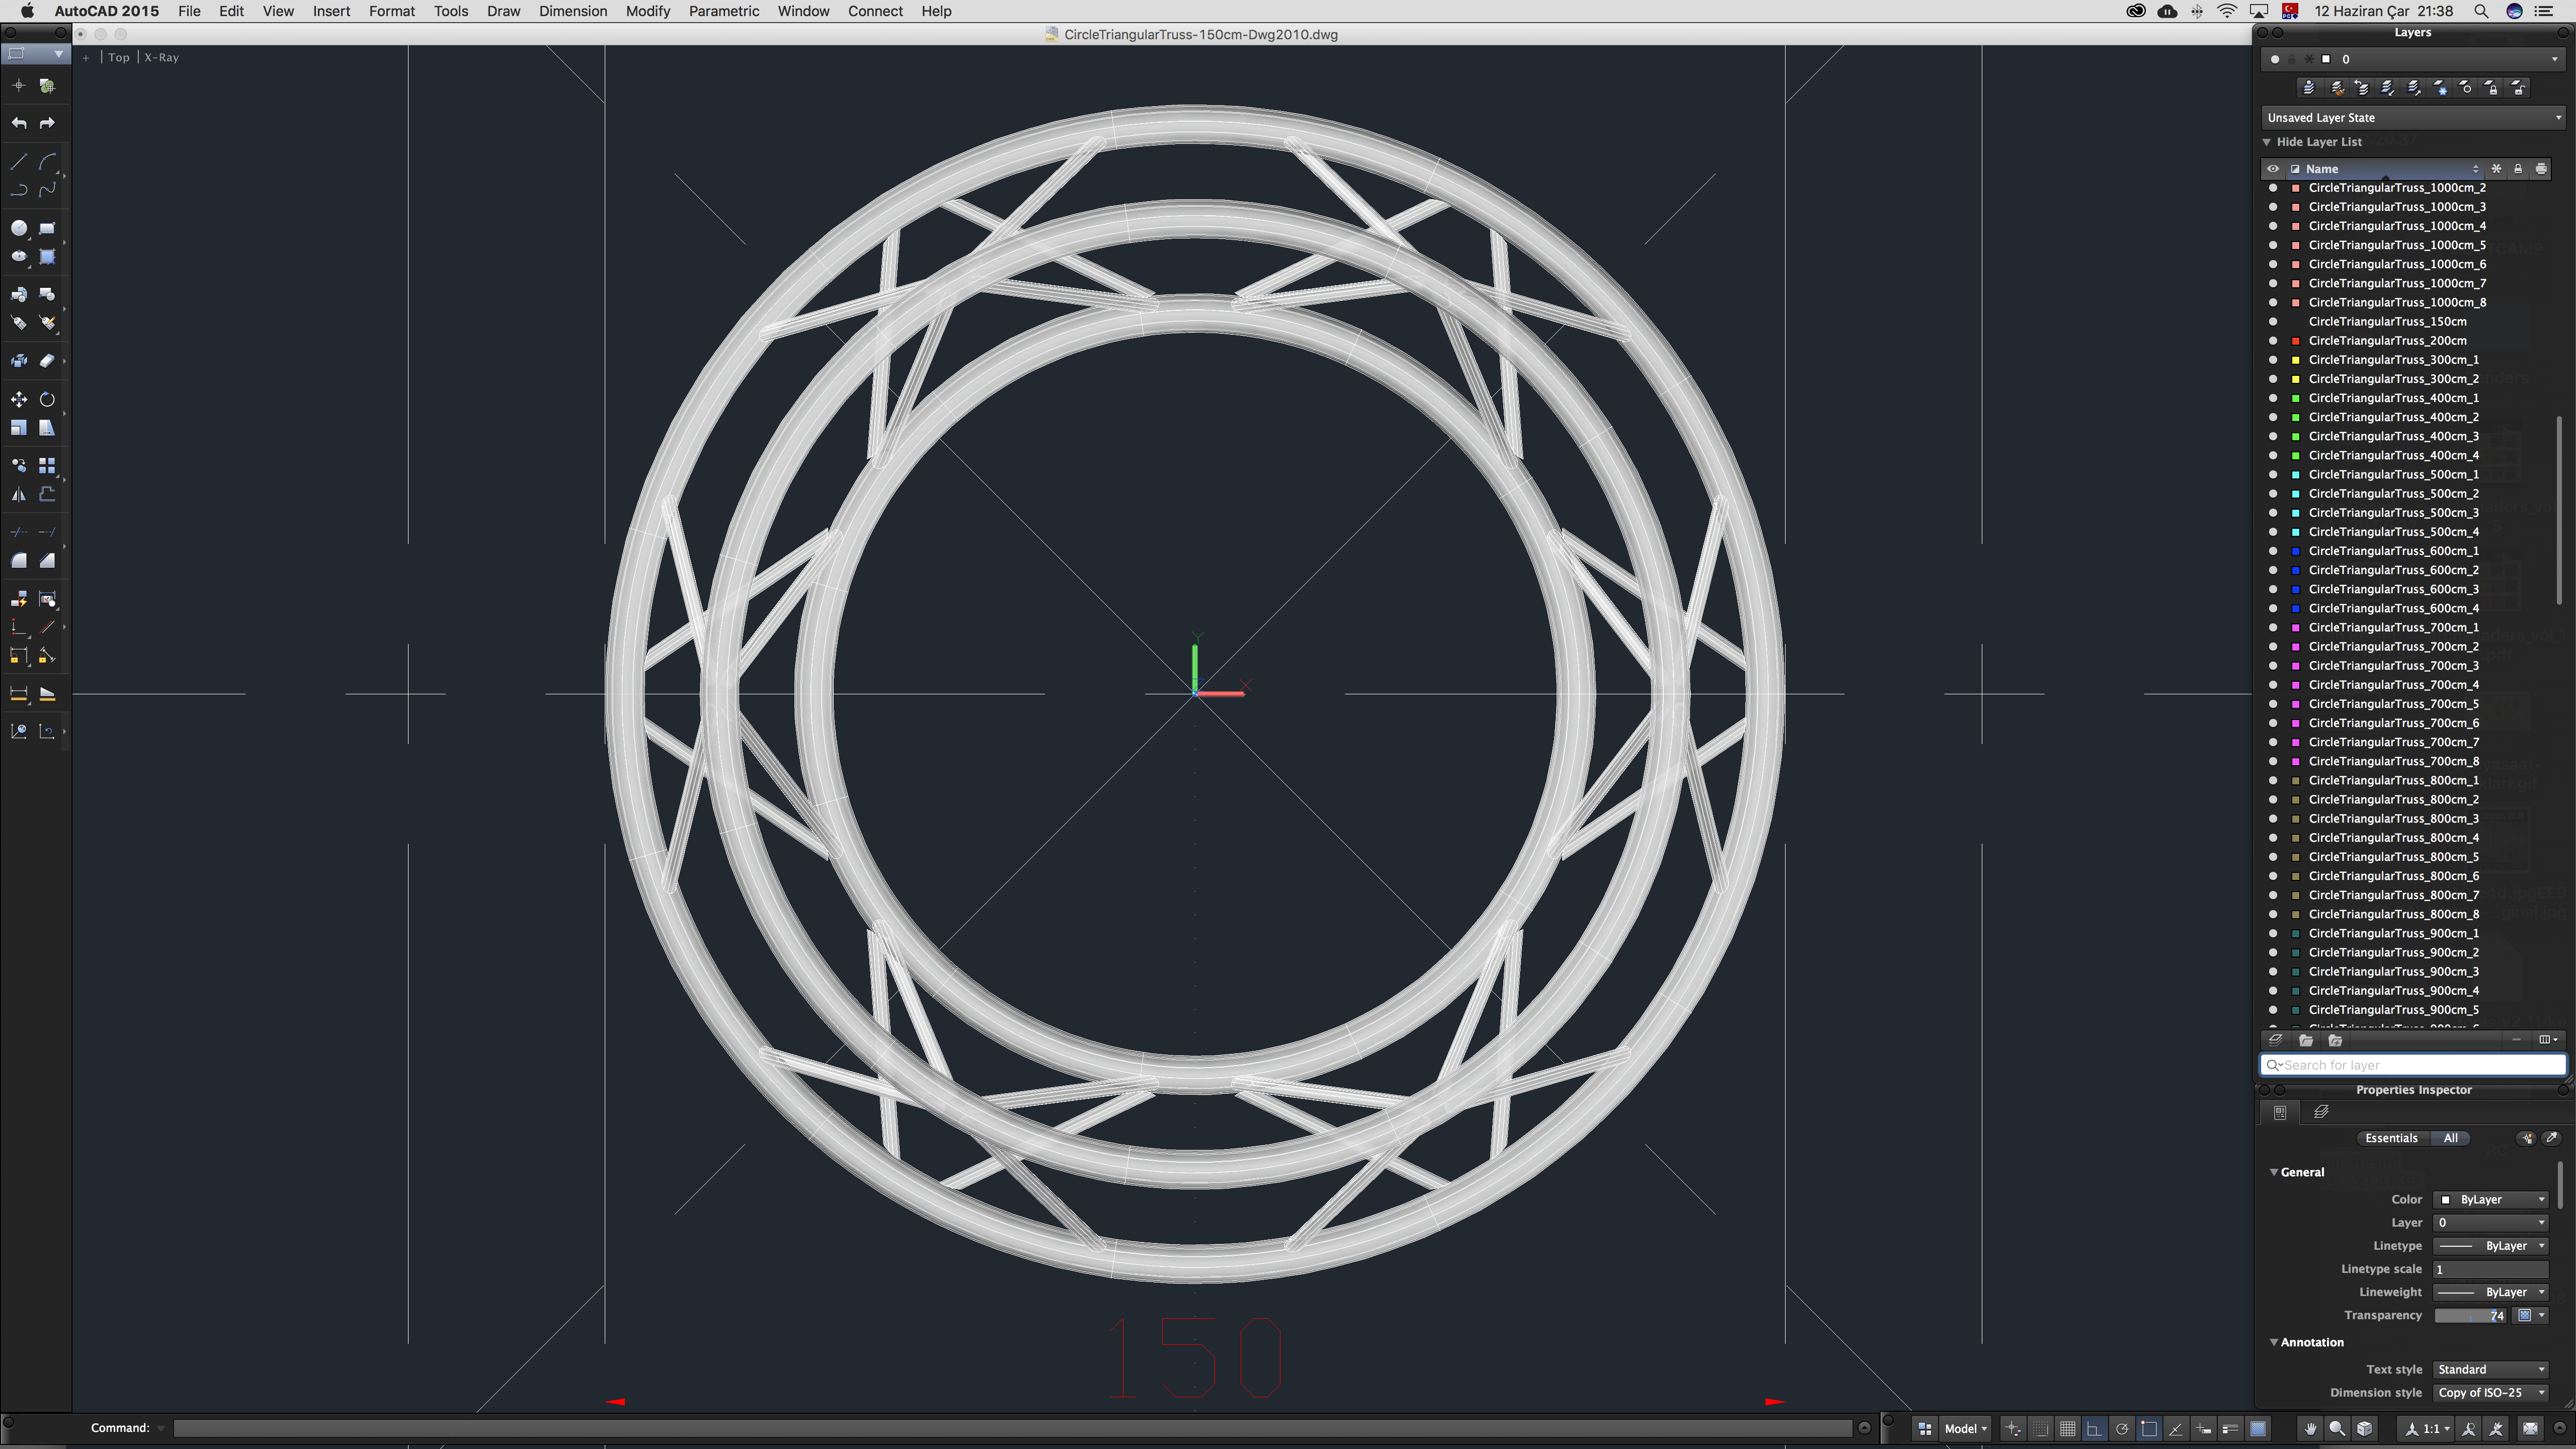 Circle Triangular Truss (Full diameter 150cm) 